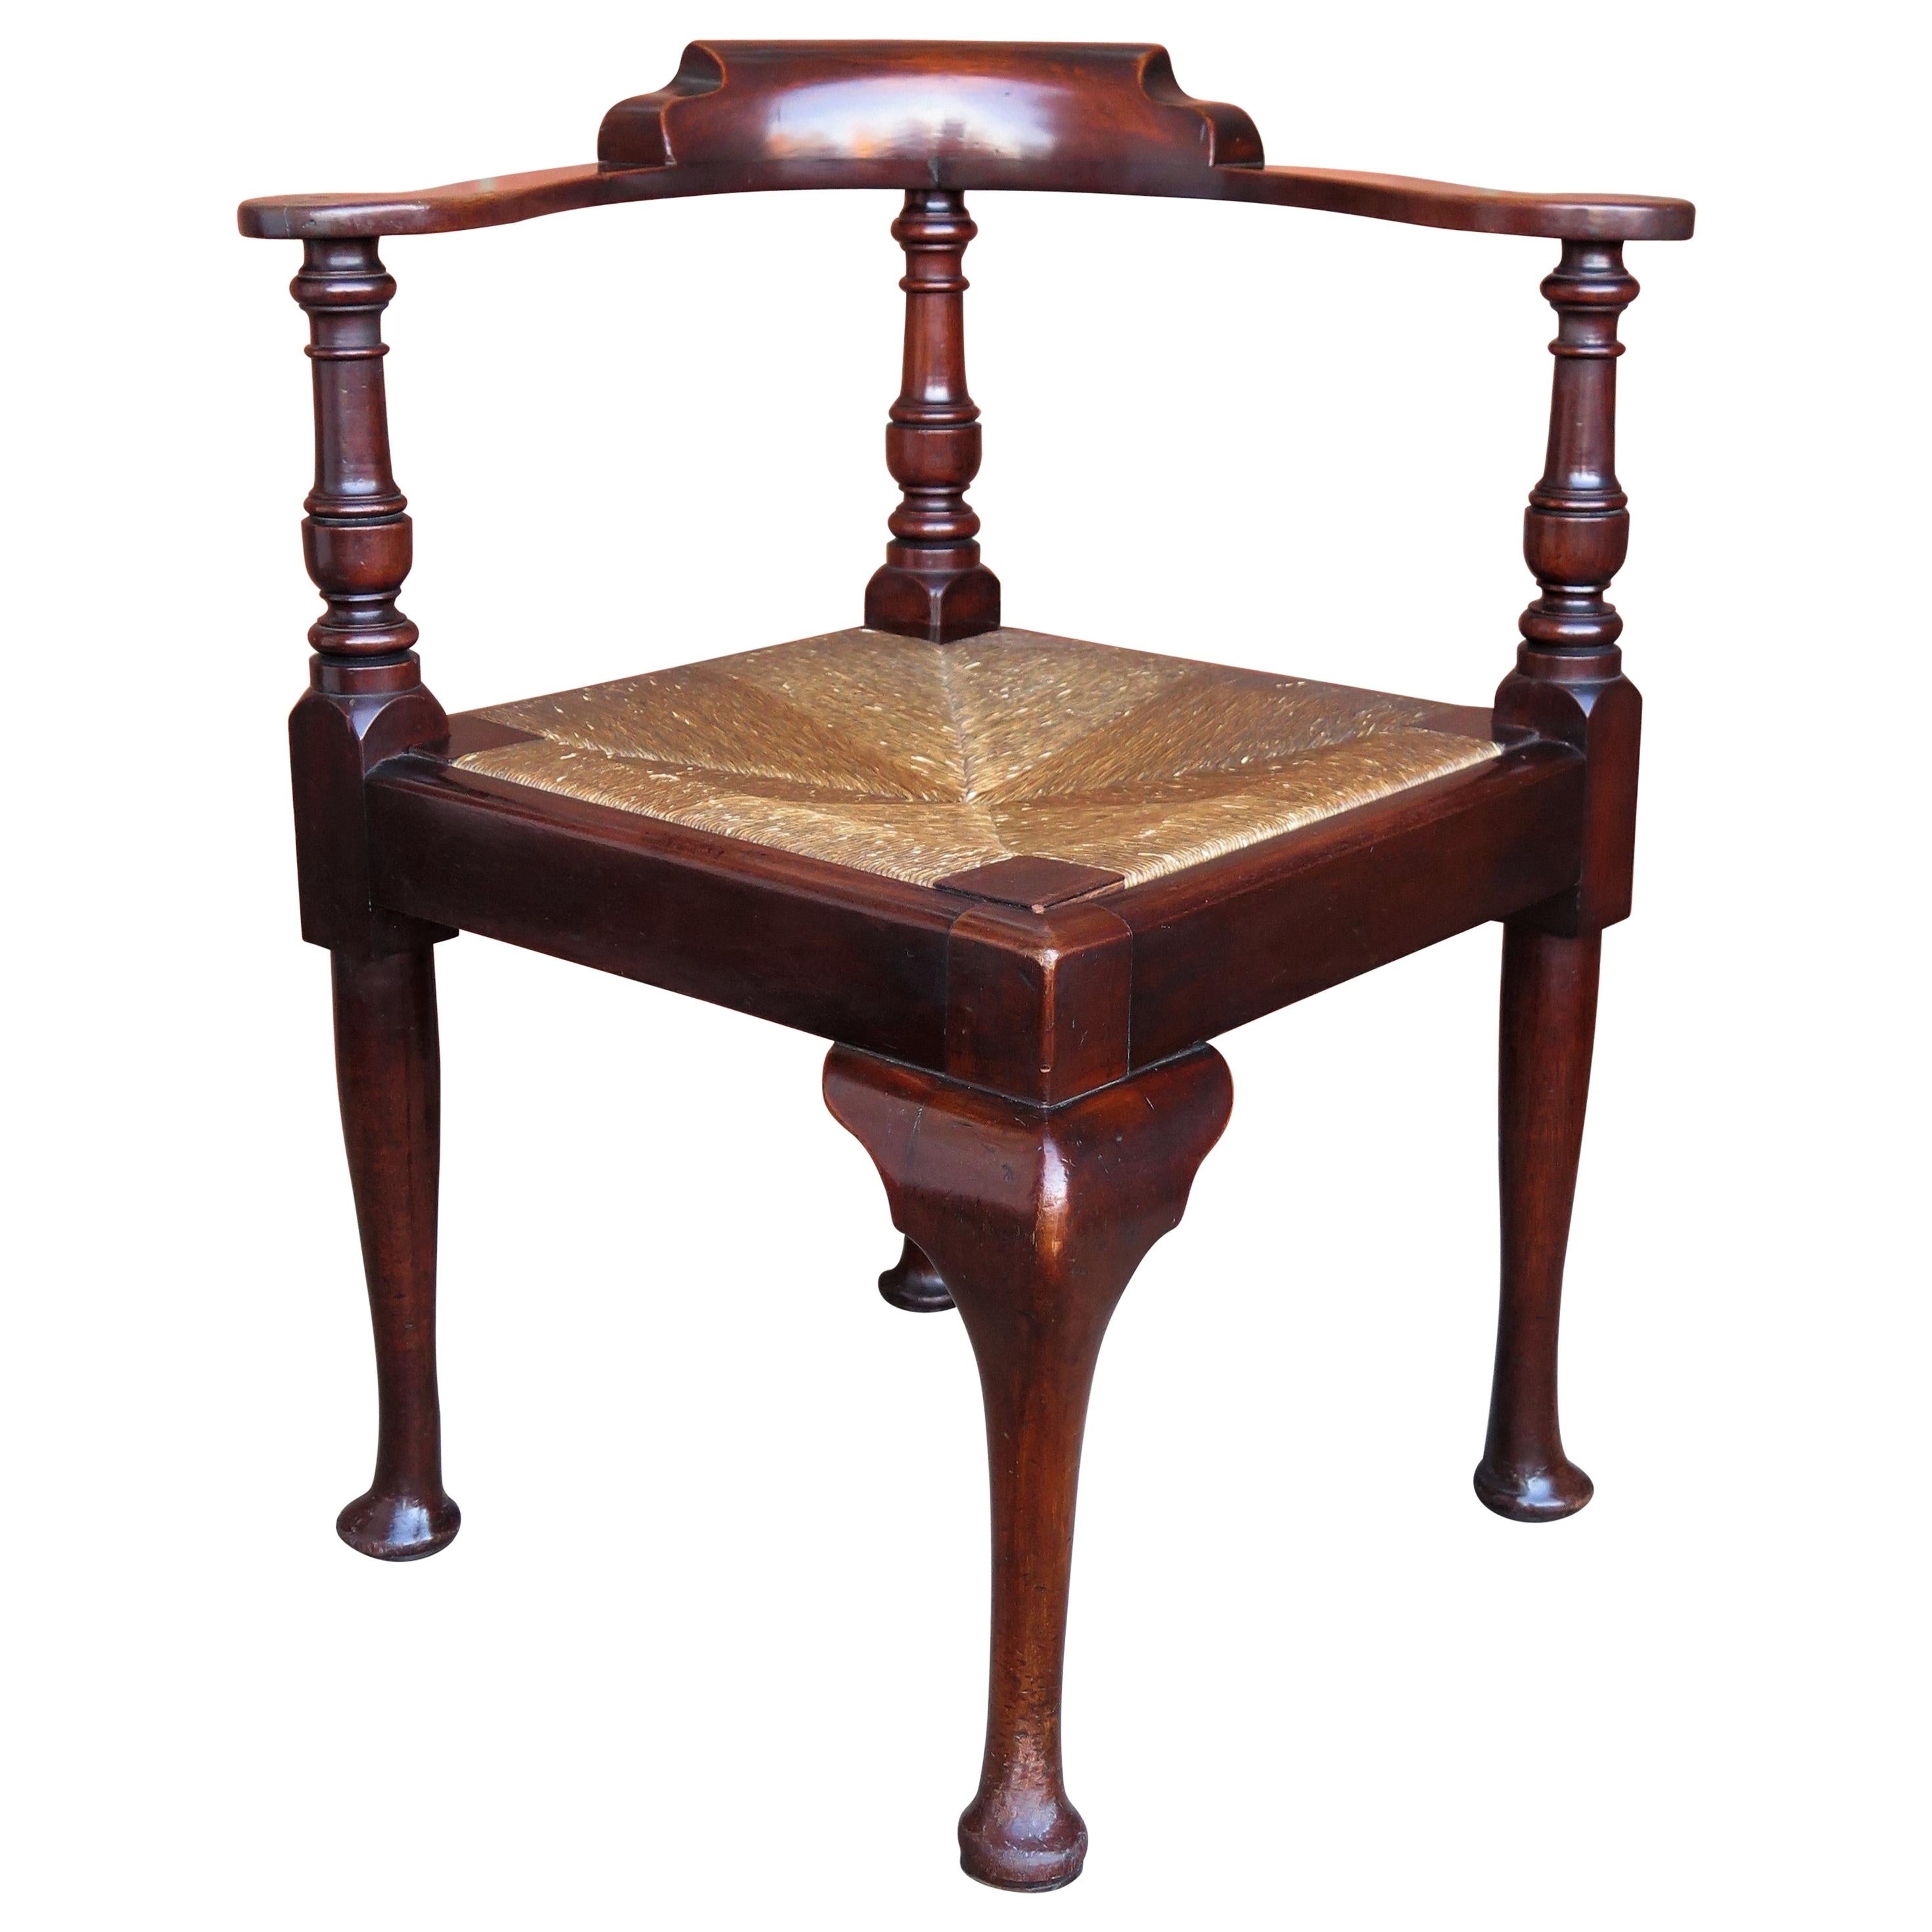 Georgian Corner Chair or Armchair in walnut with Rush Seat, English circa 1780